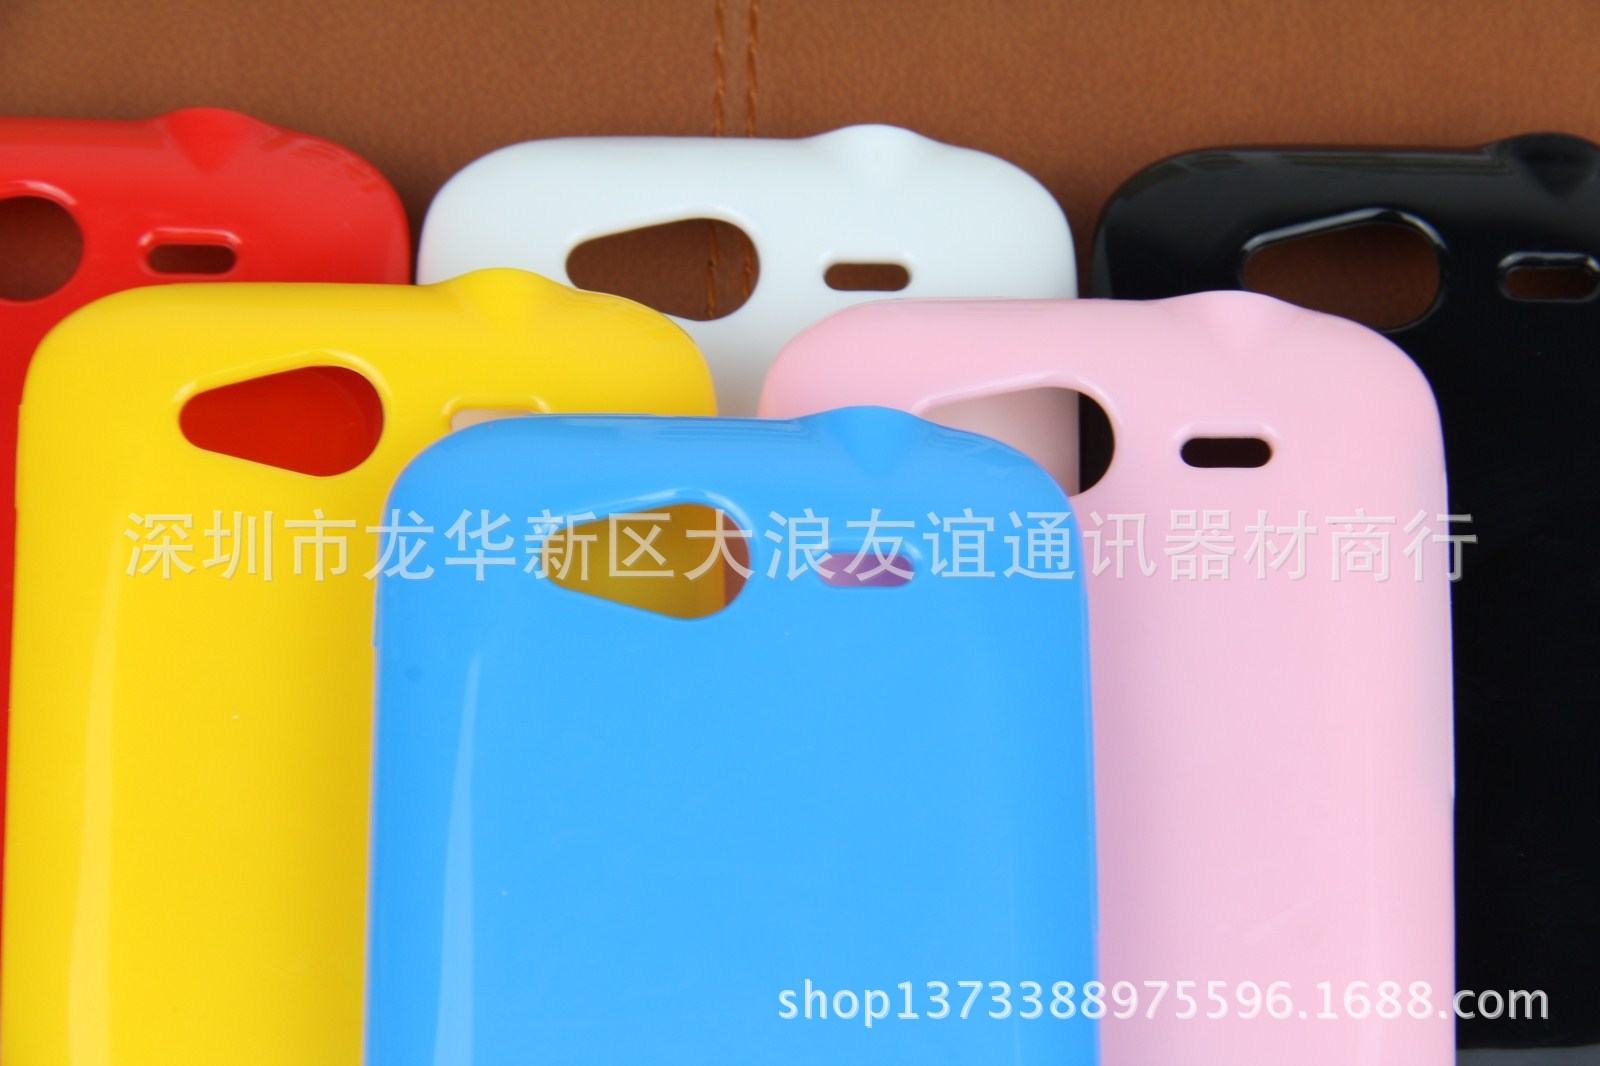 家直销 HTC G13 手机套 果冻套 TPU 保护套 贴